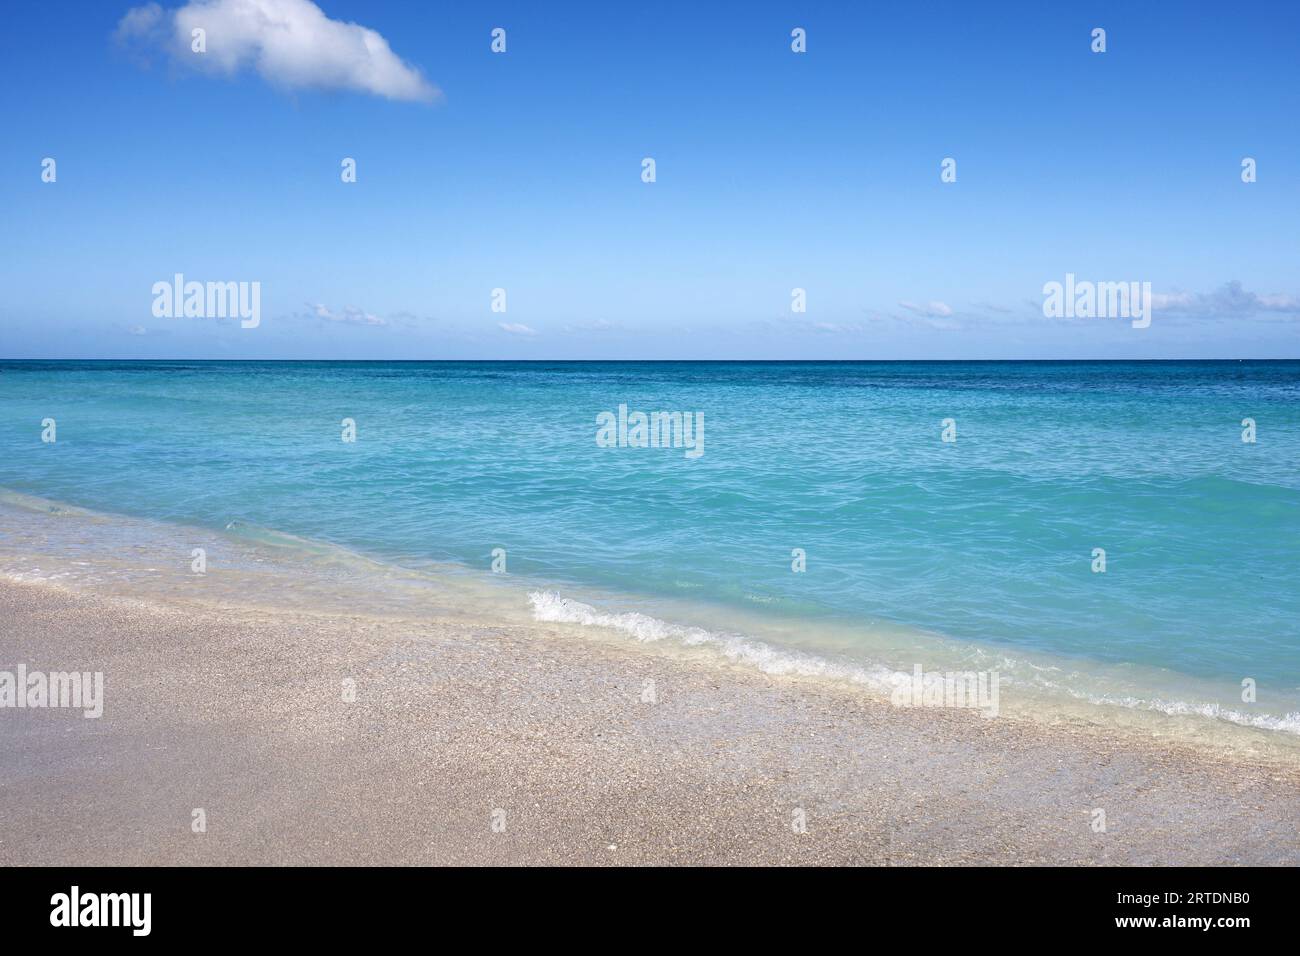 Leerer Strand mit weißem Sand, Blick auf azurblaue Wellen und blauen Himmel mit Wolken. Karibikküste, Hintergrund für Urlaub in einer paradiesischen Natur Stockfoto